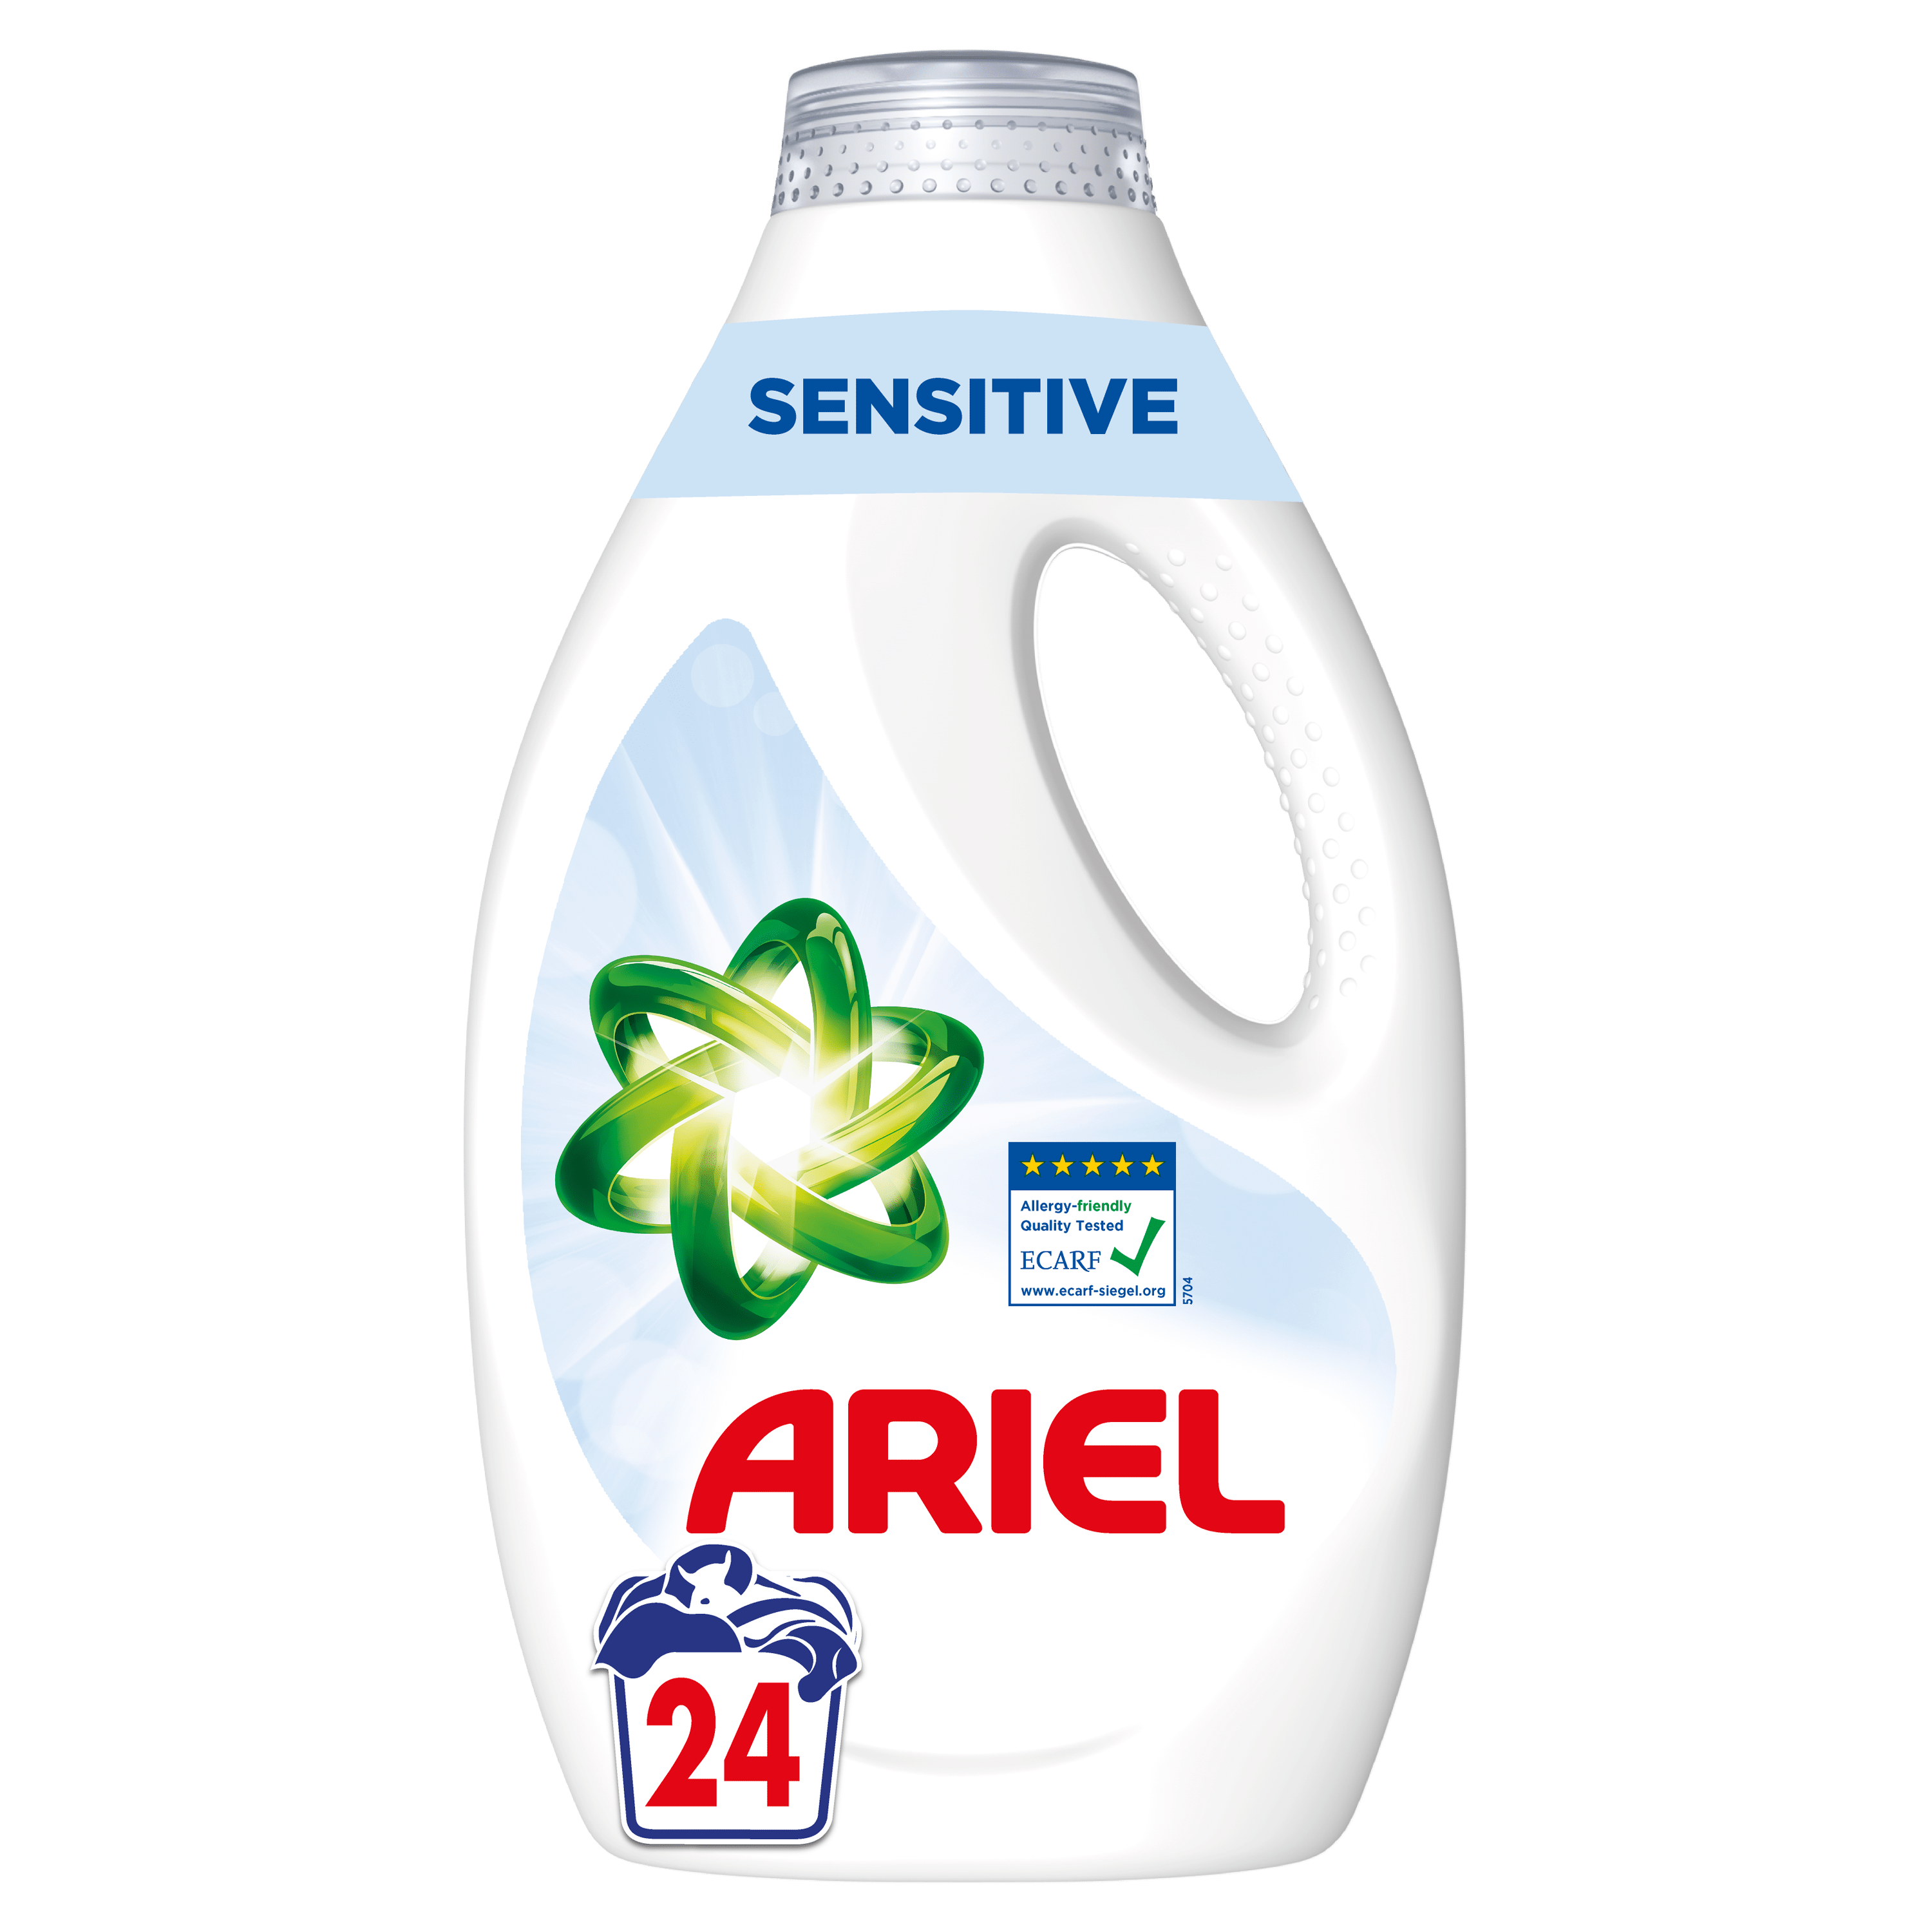 Ariel lessive liquide Regular, 110 fois, flacon de 4,95 litres